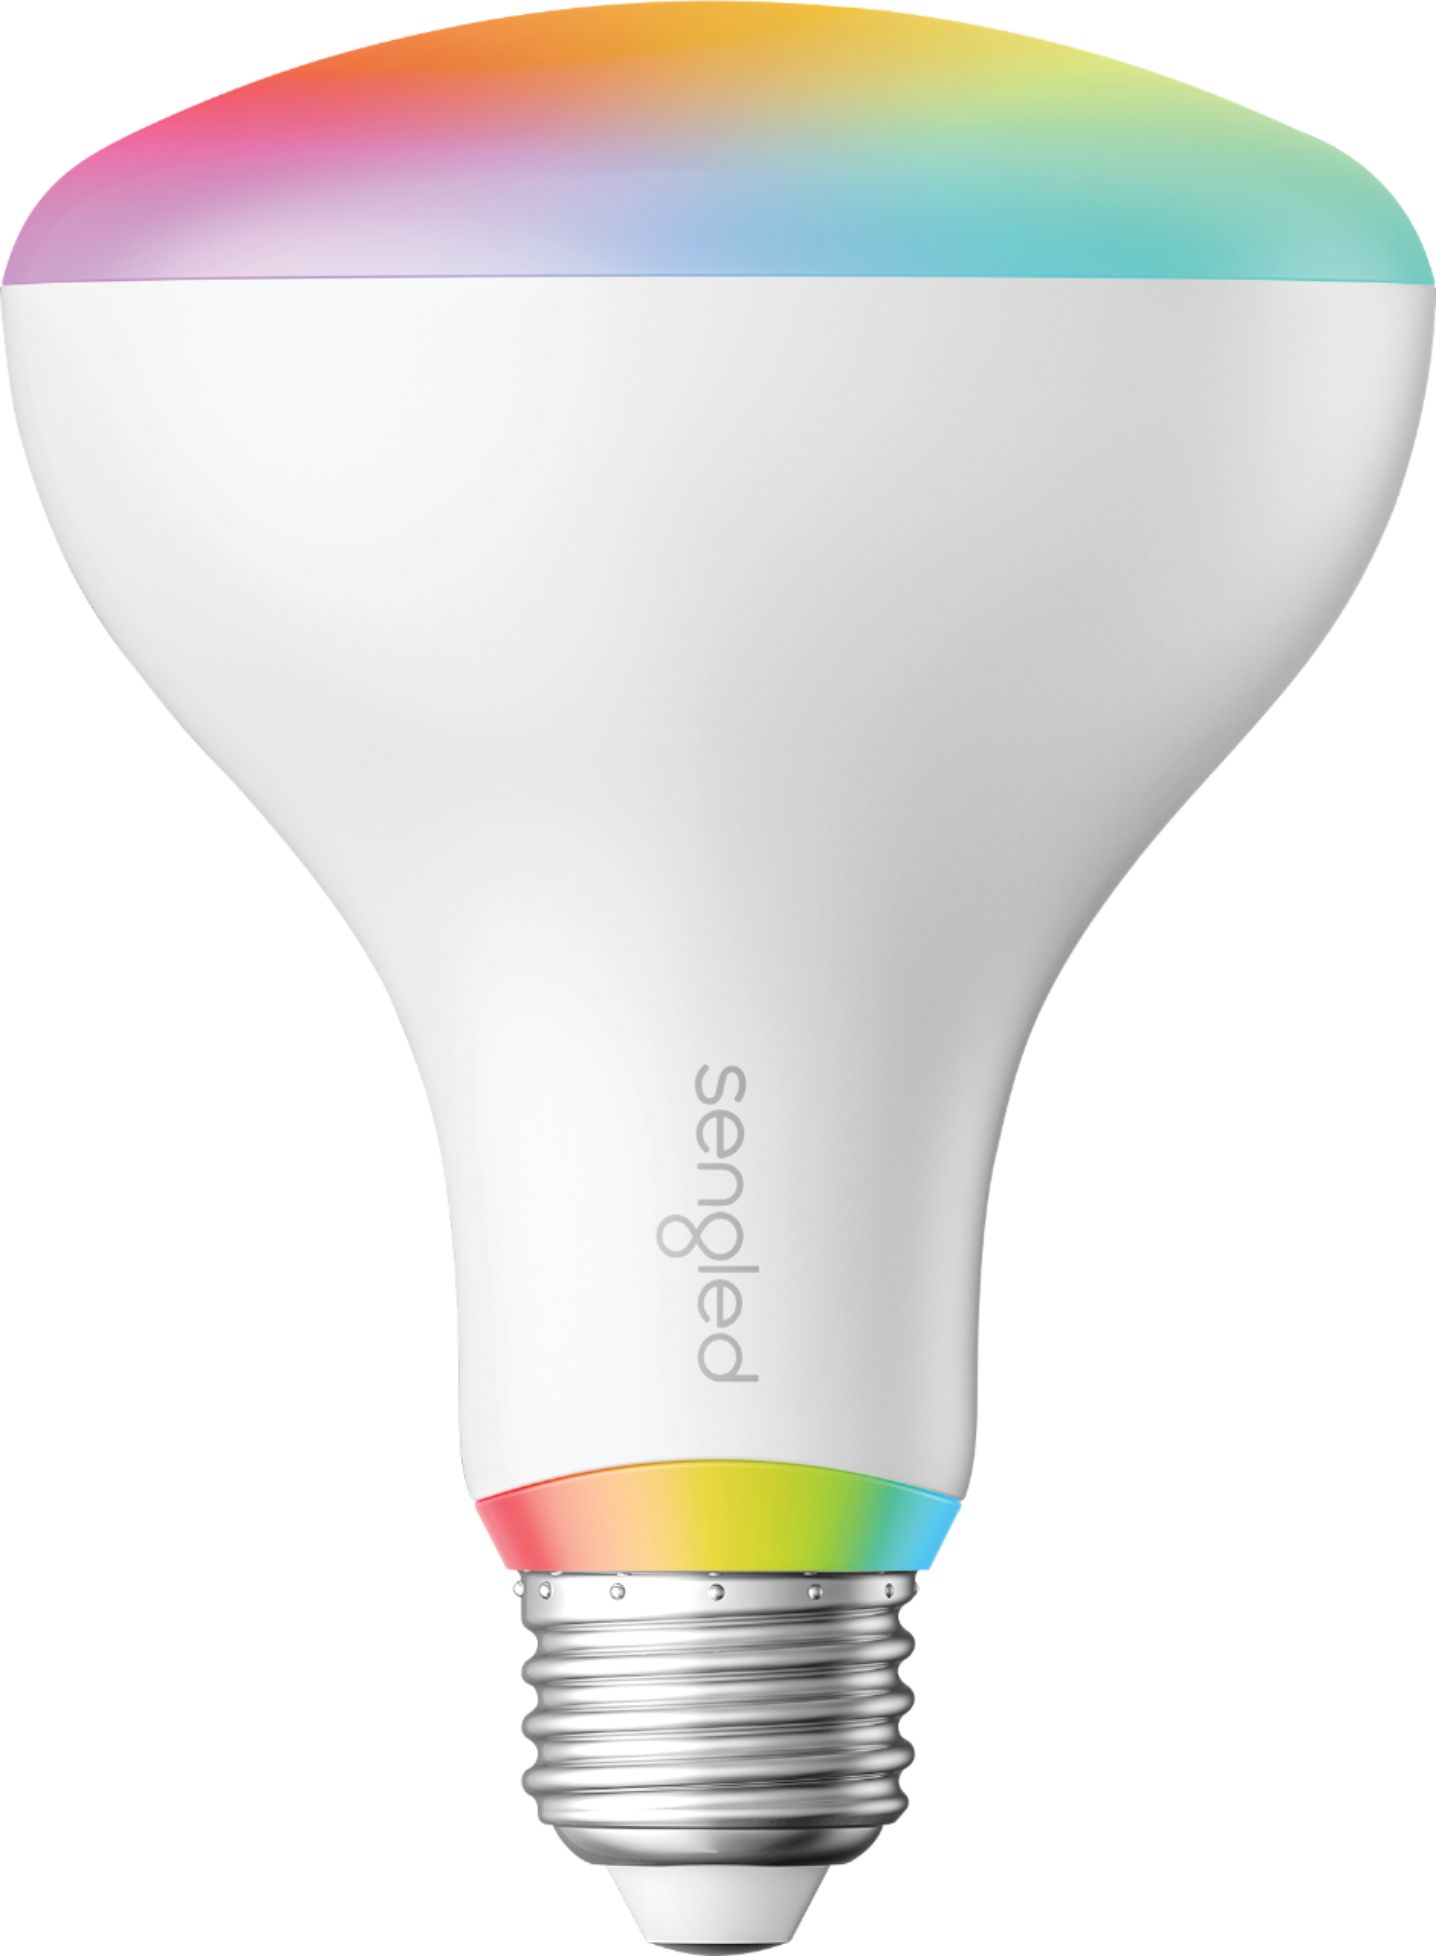 Sengled - BR30 Smart LED Light Bulb - Multicolor